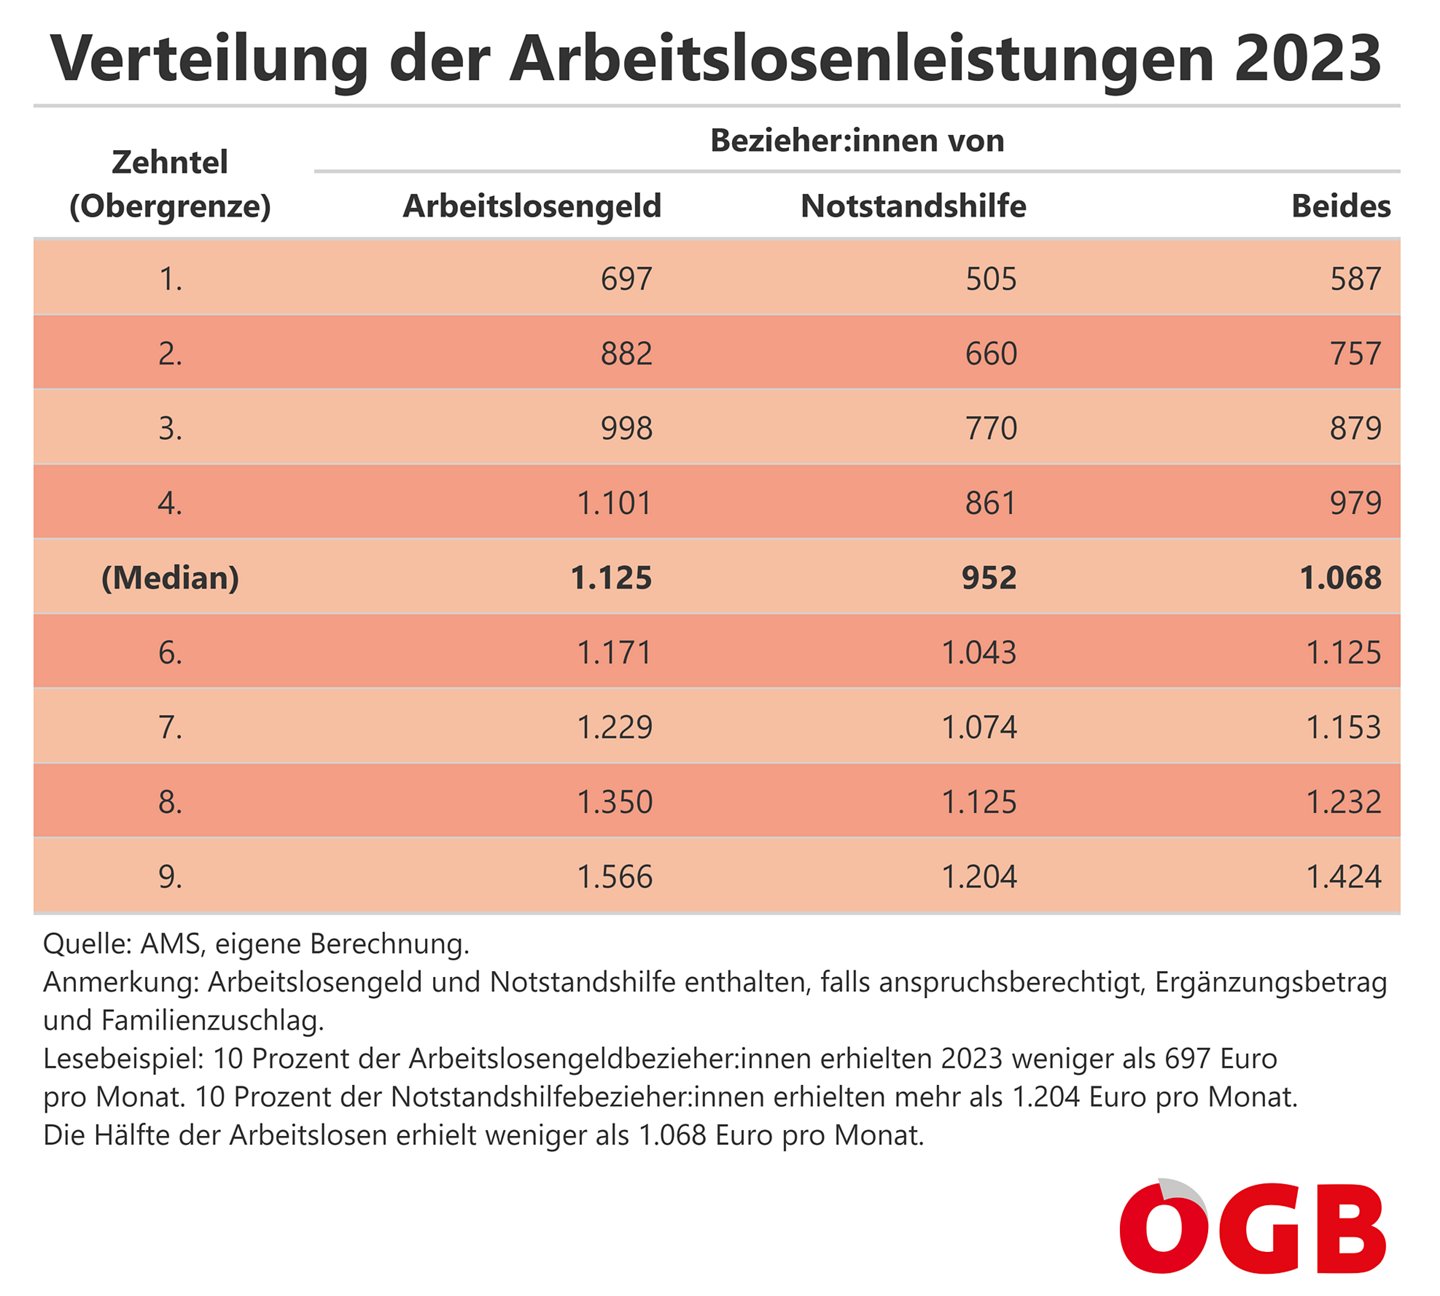 Die Tabelle zeigt die Verteilung der Arbeitslosenleistungen 2023 nach Zehntel (Obergrenze der Dezile). Für alle Arbeitslosenleistungen und getrennt nach Arbeitslosengeld und Notstandshilfe.